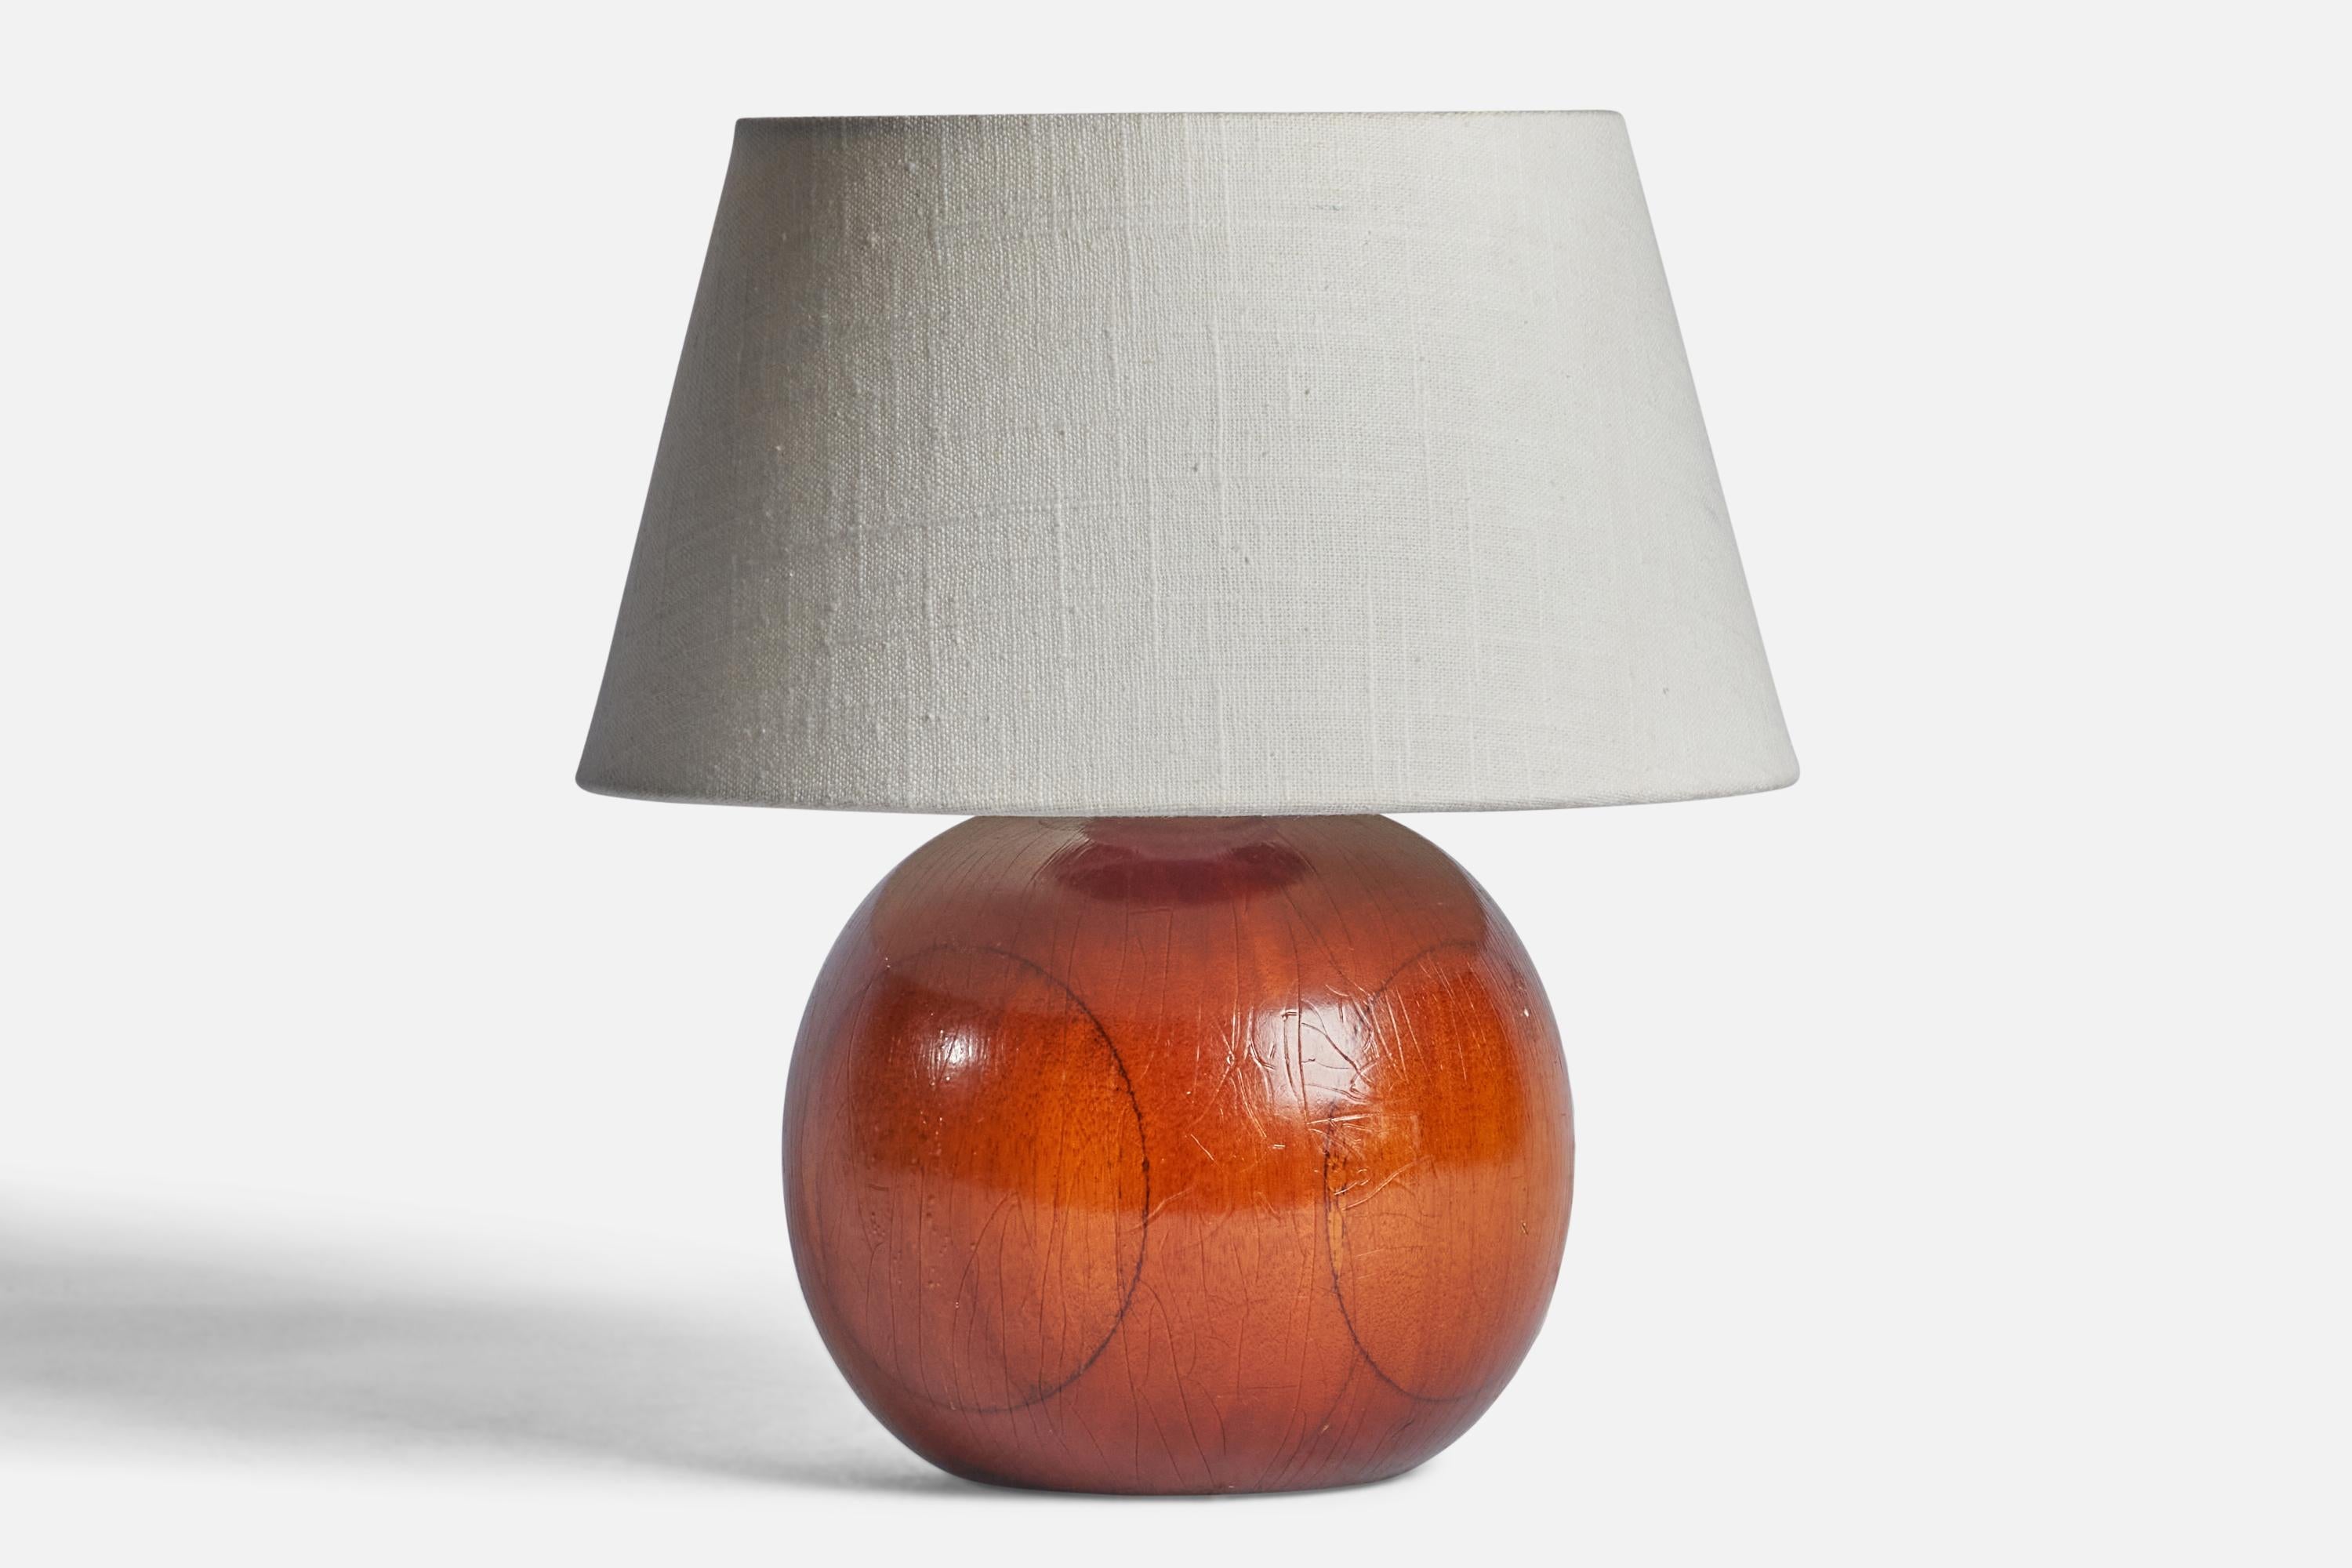 Lampe de table en bois conçue et produite en Suède, années 1950

Dimensions de la lampe (pouces) : 7.65 H x 6